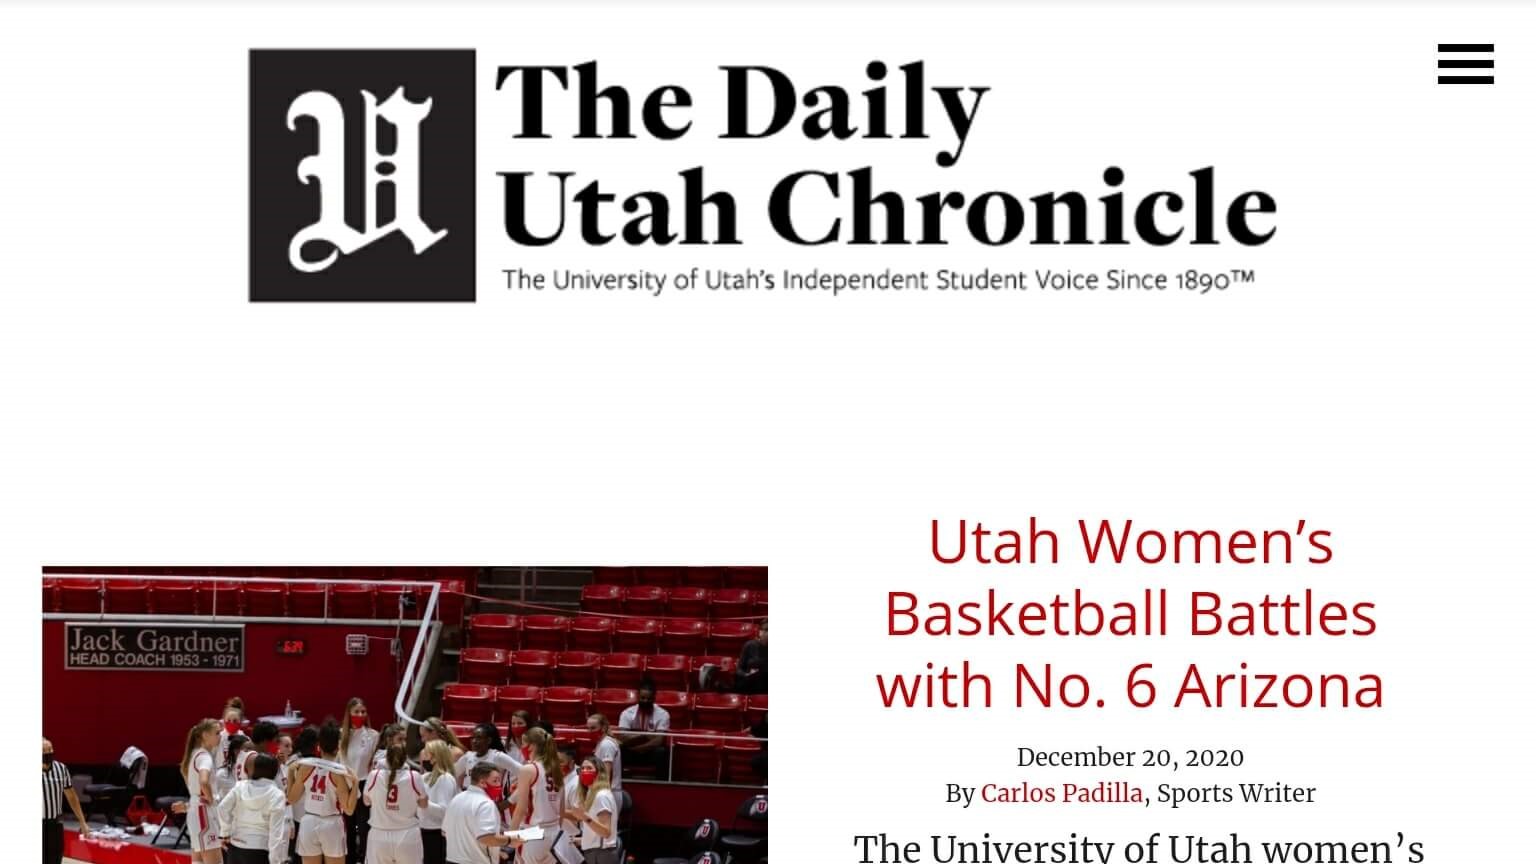 Utah Newspapers 19 The Daily Utah Chronicle Website